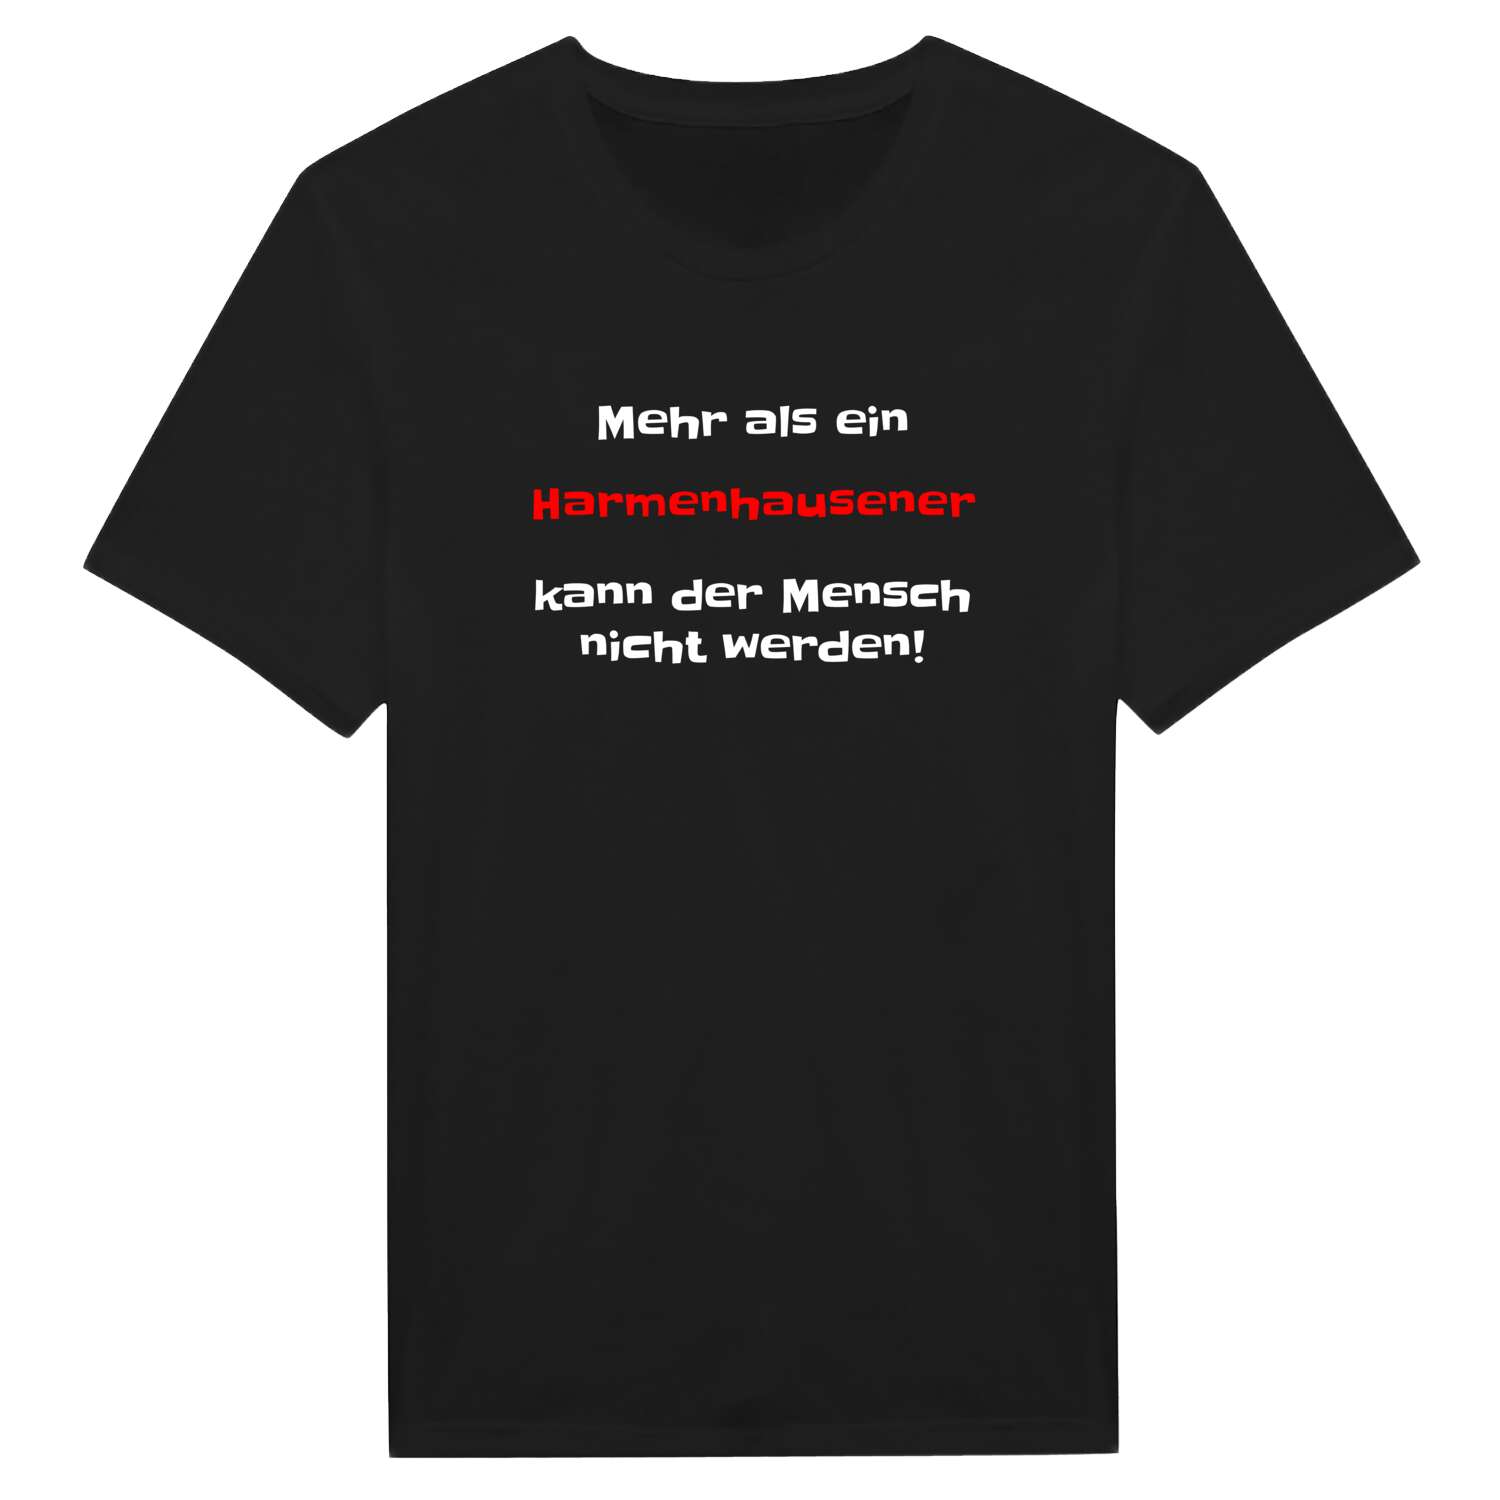 Harmenhausen T-Shirt »Mehr als ein«